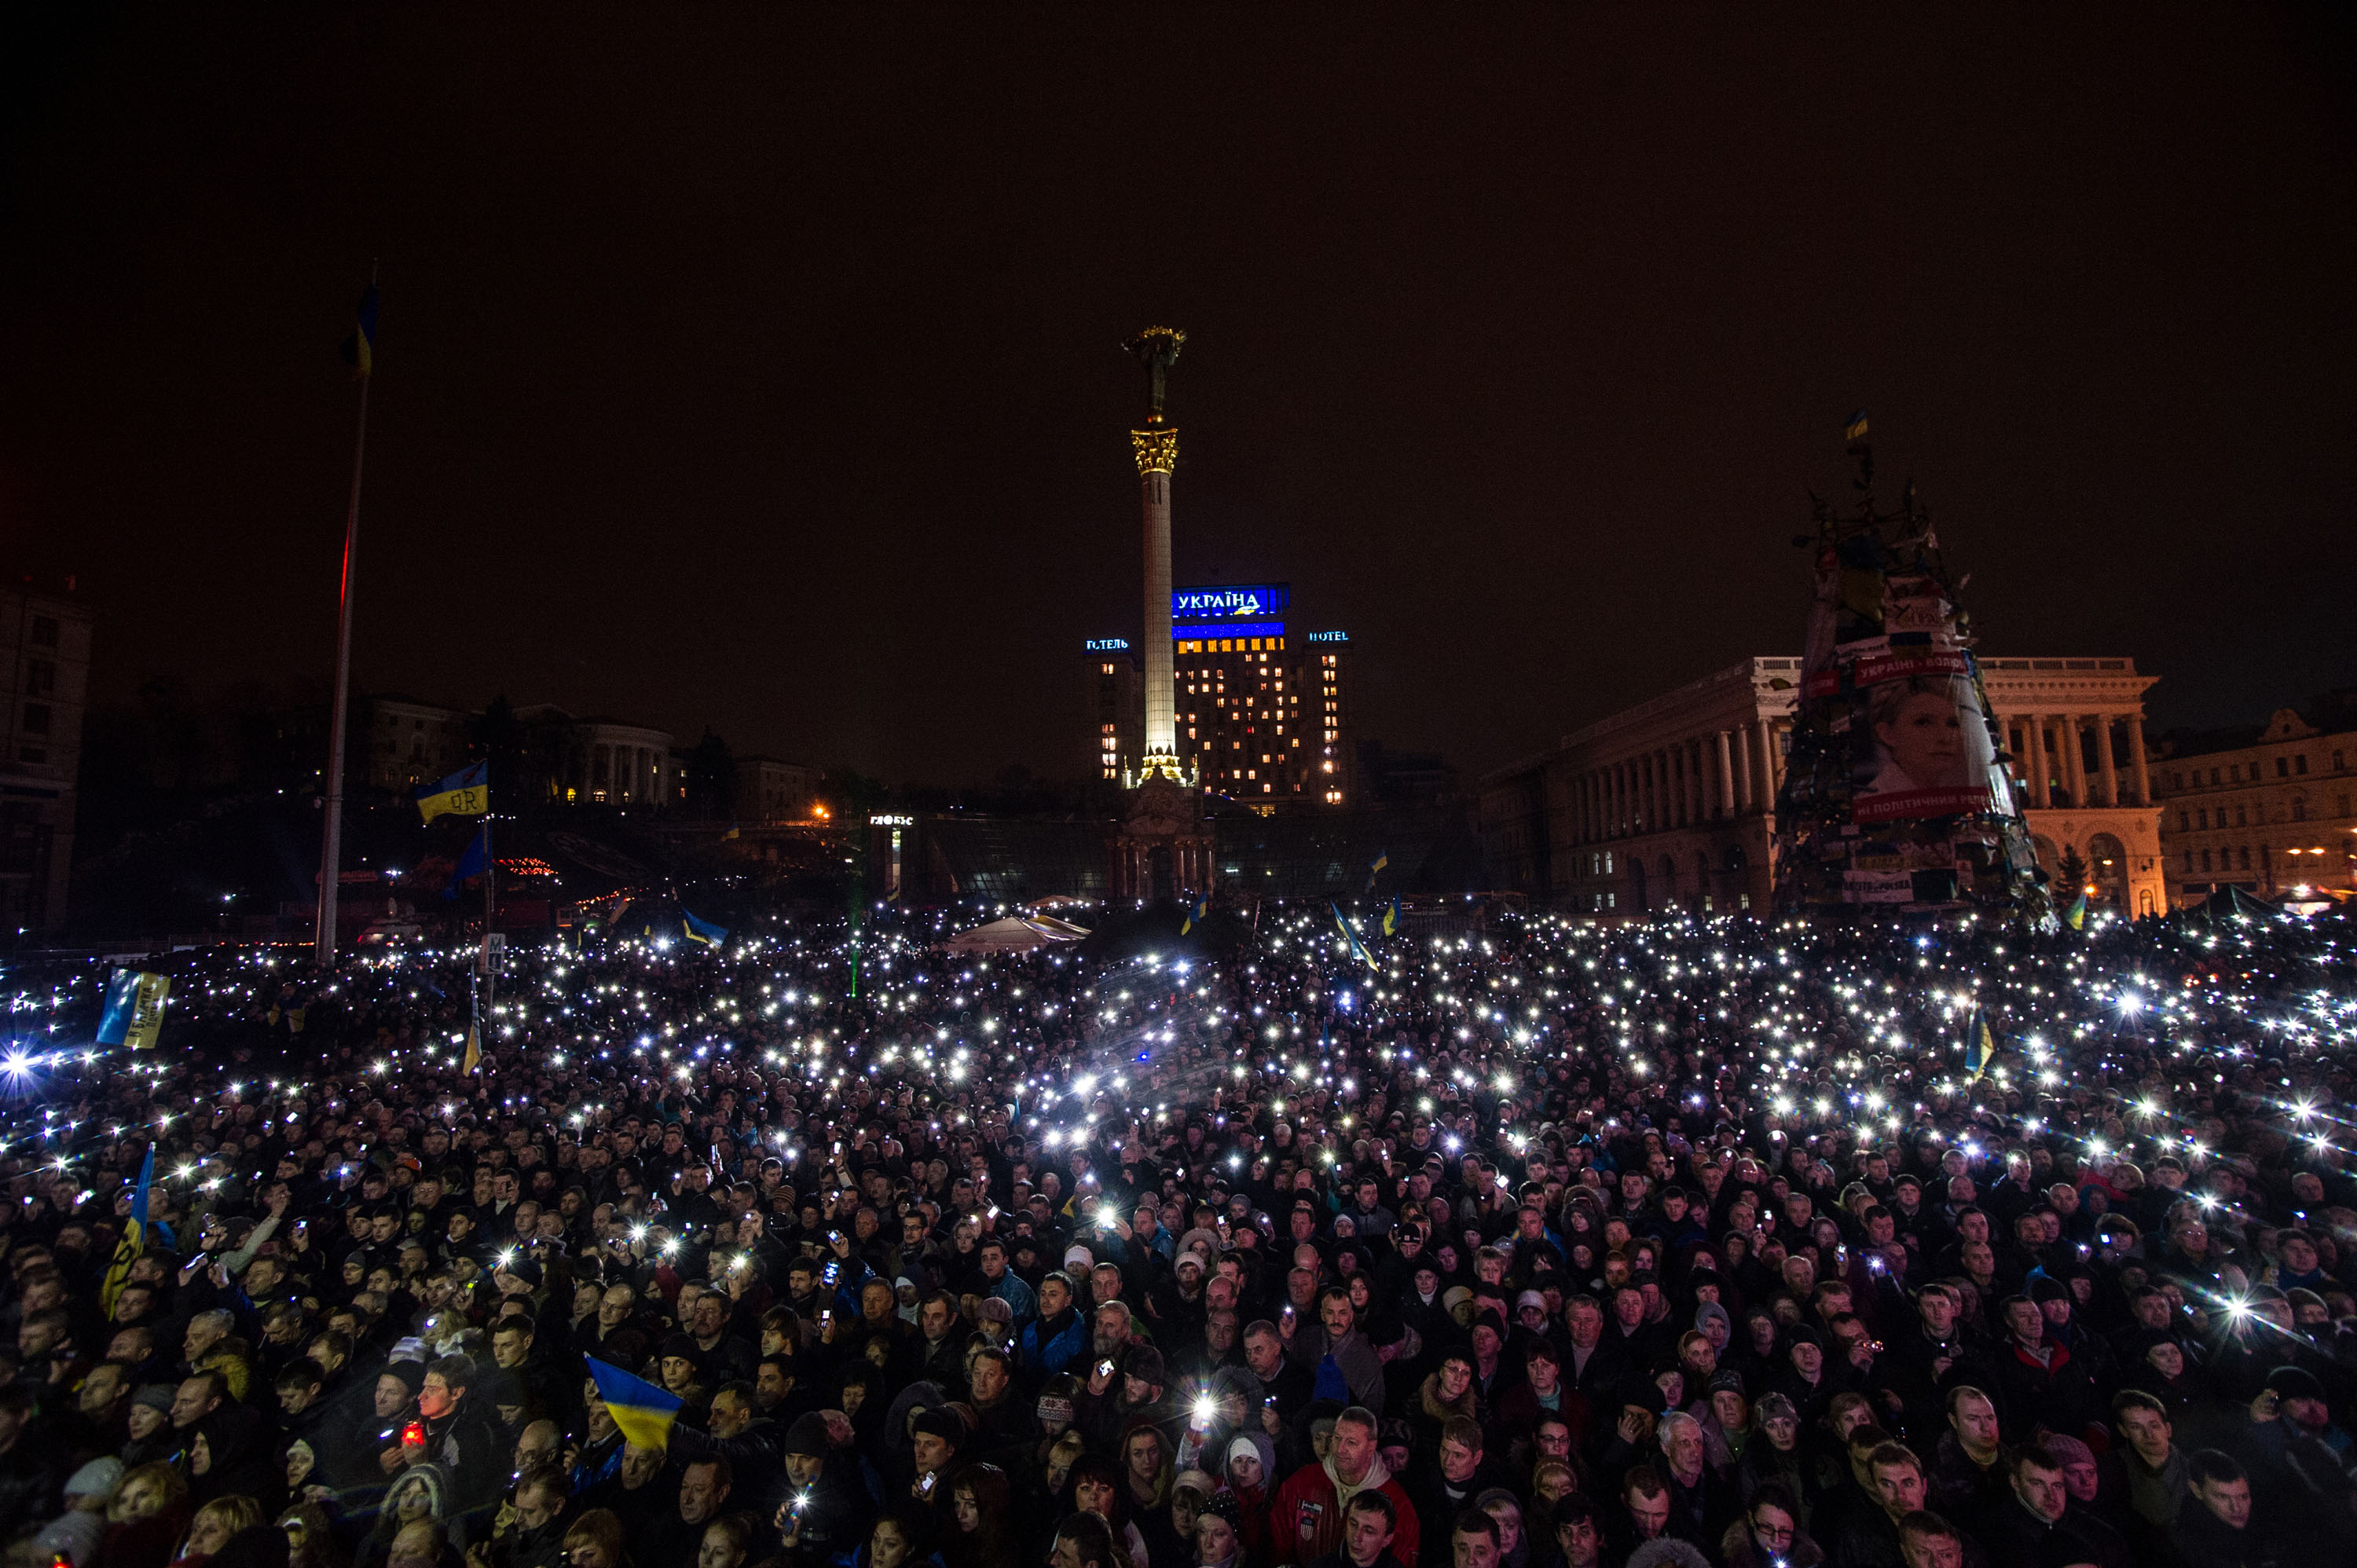 Résztvevők mobiltelefonjaikkal világítanak a csütörtöki összecsapások áldozatainak emlékére rendezett gyászszertatráson a kijevi Függetlenség terén, a Majdanon 2014. február 22-én..jpg